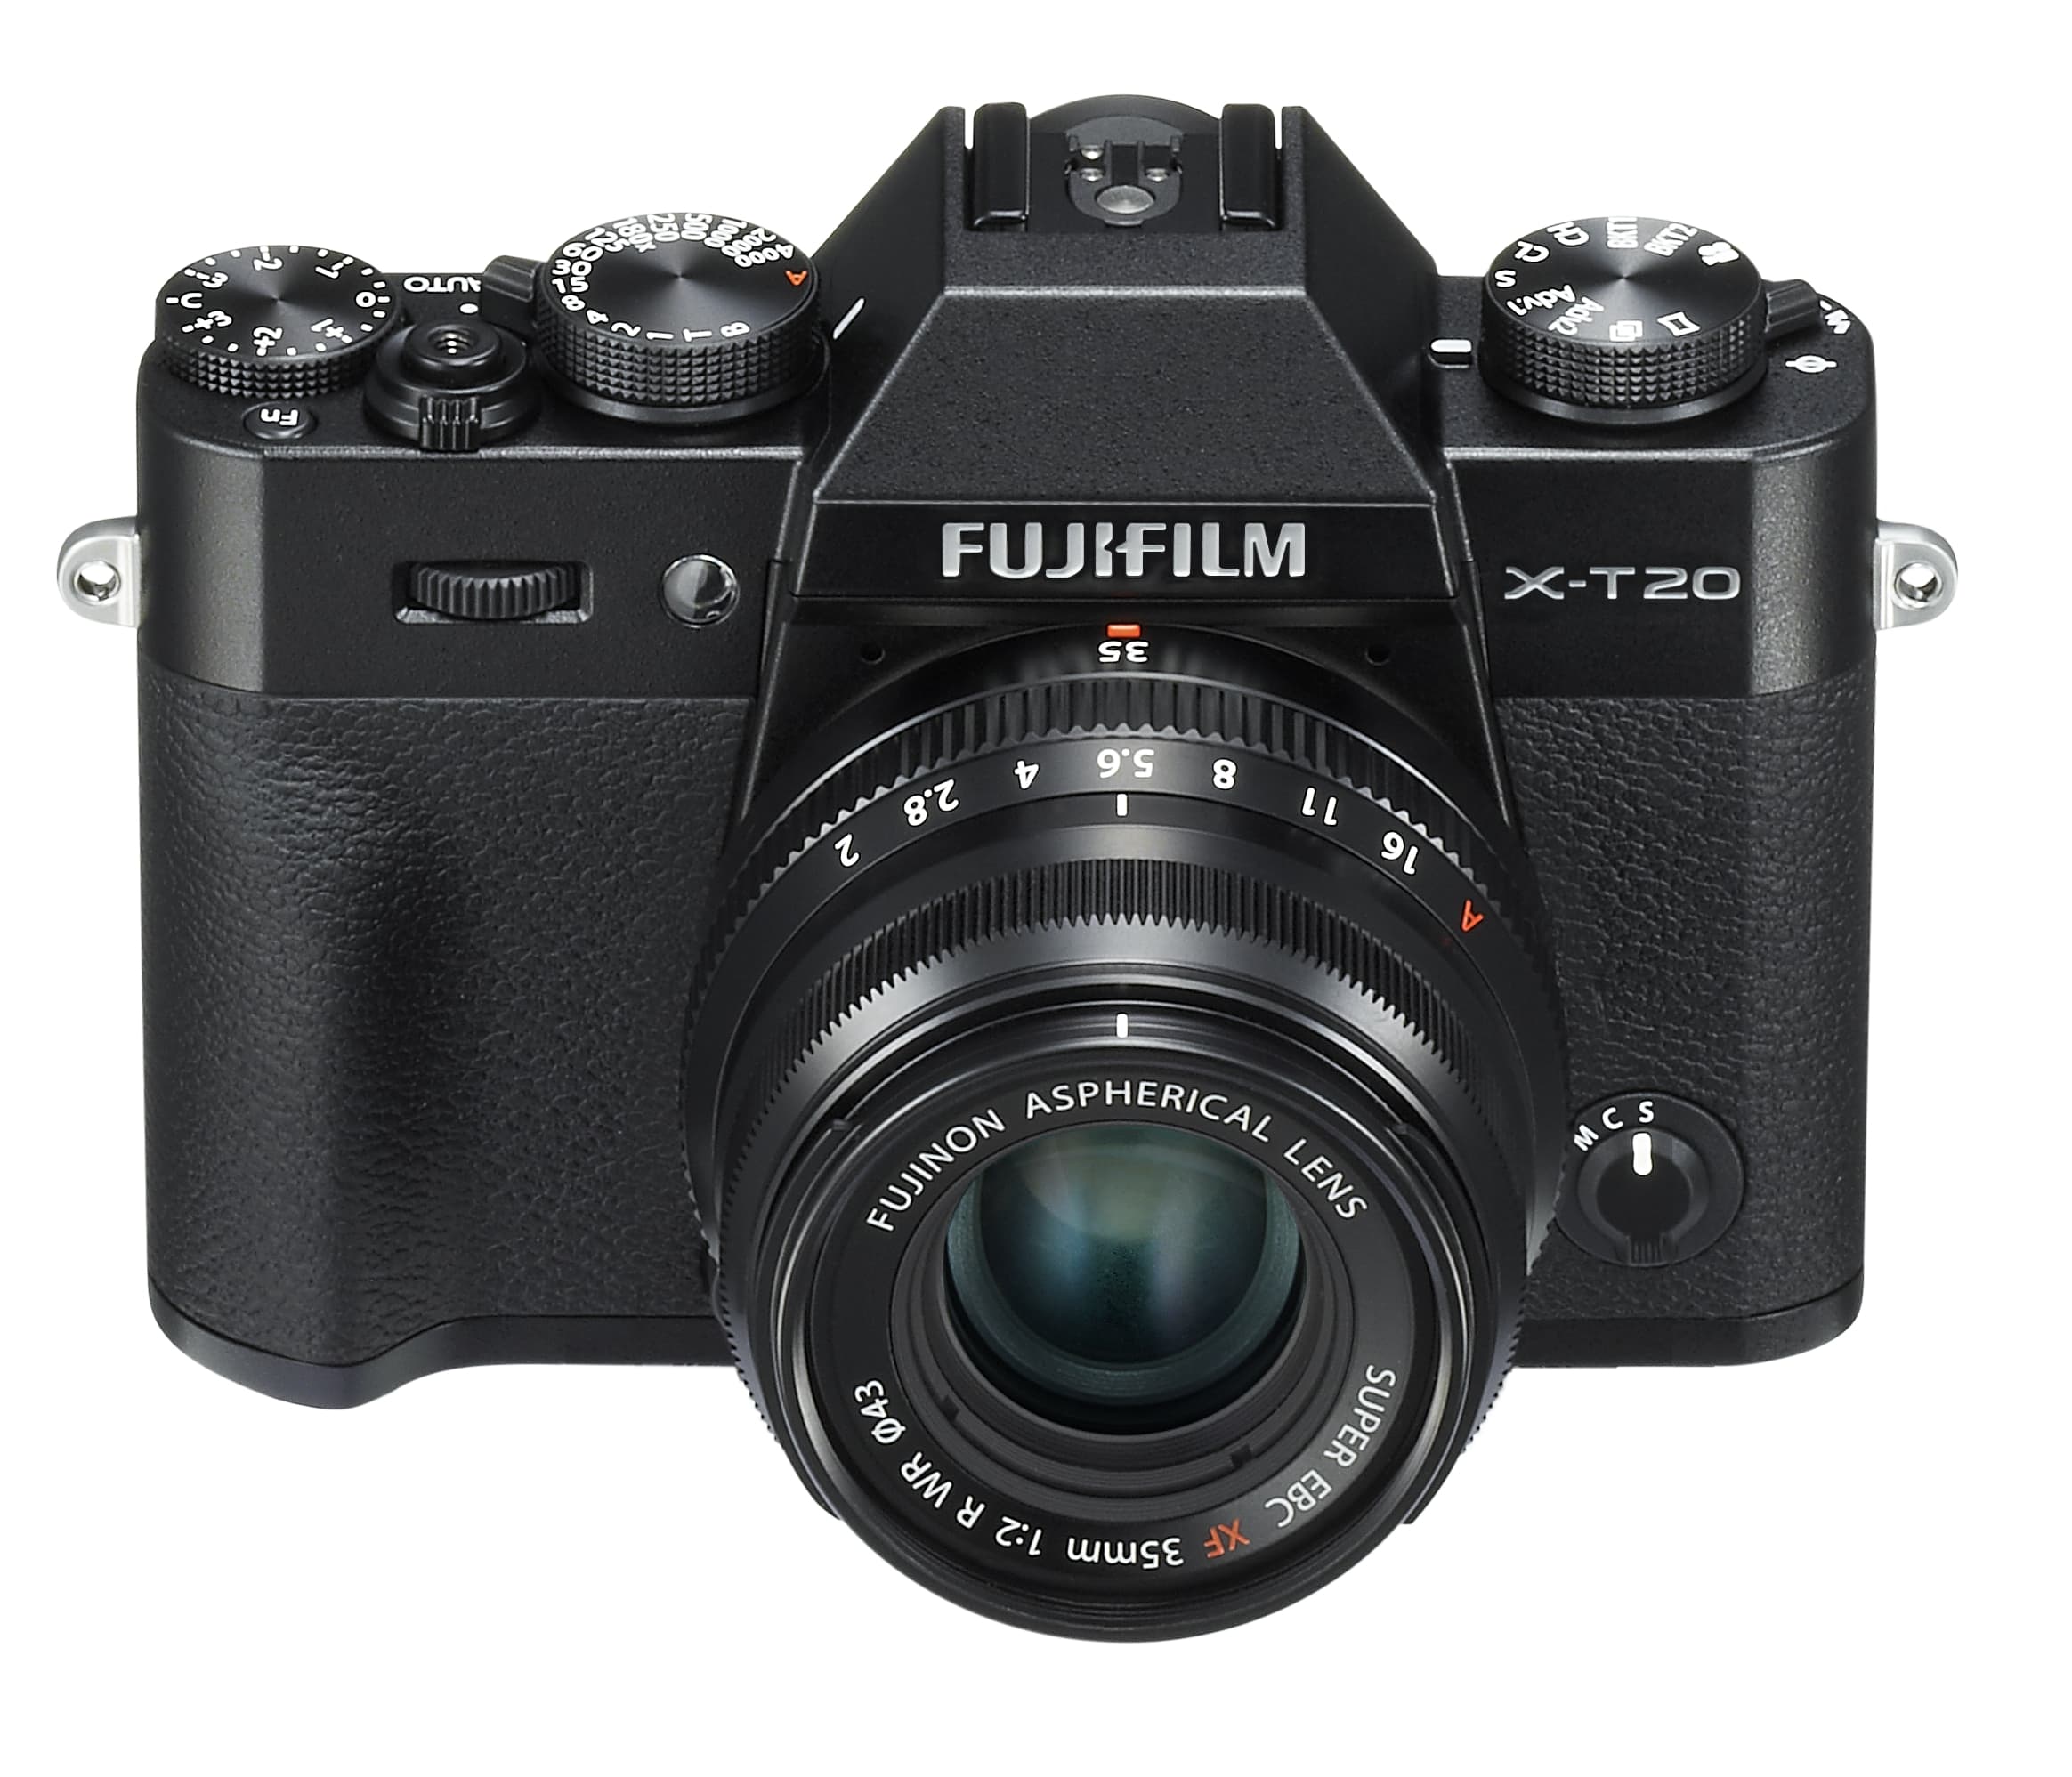 gereedschap tafel in verlegenheid gebracht Fujifilm X-T20 vs Canon EOS M5 - Amateur Photographer